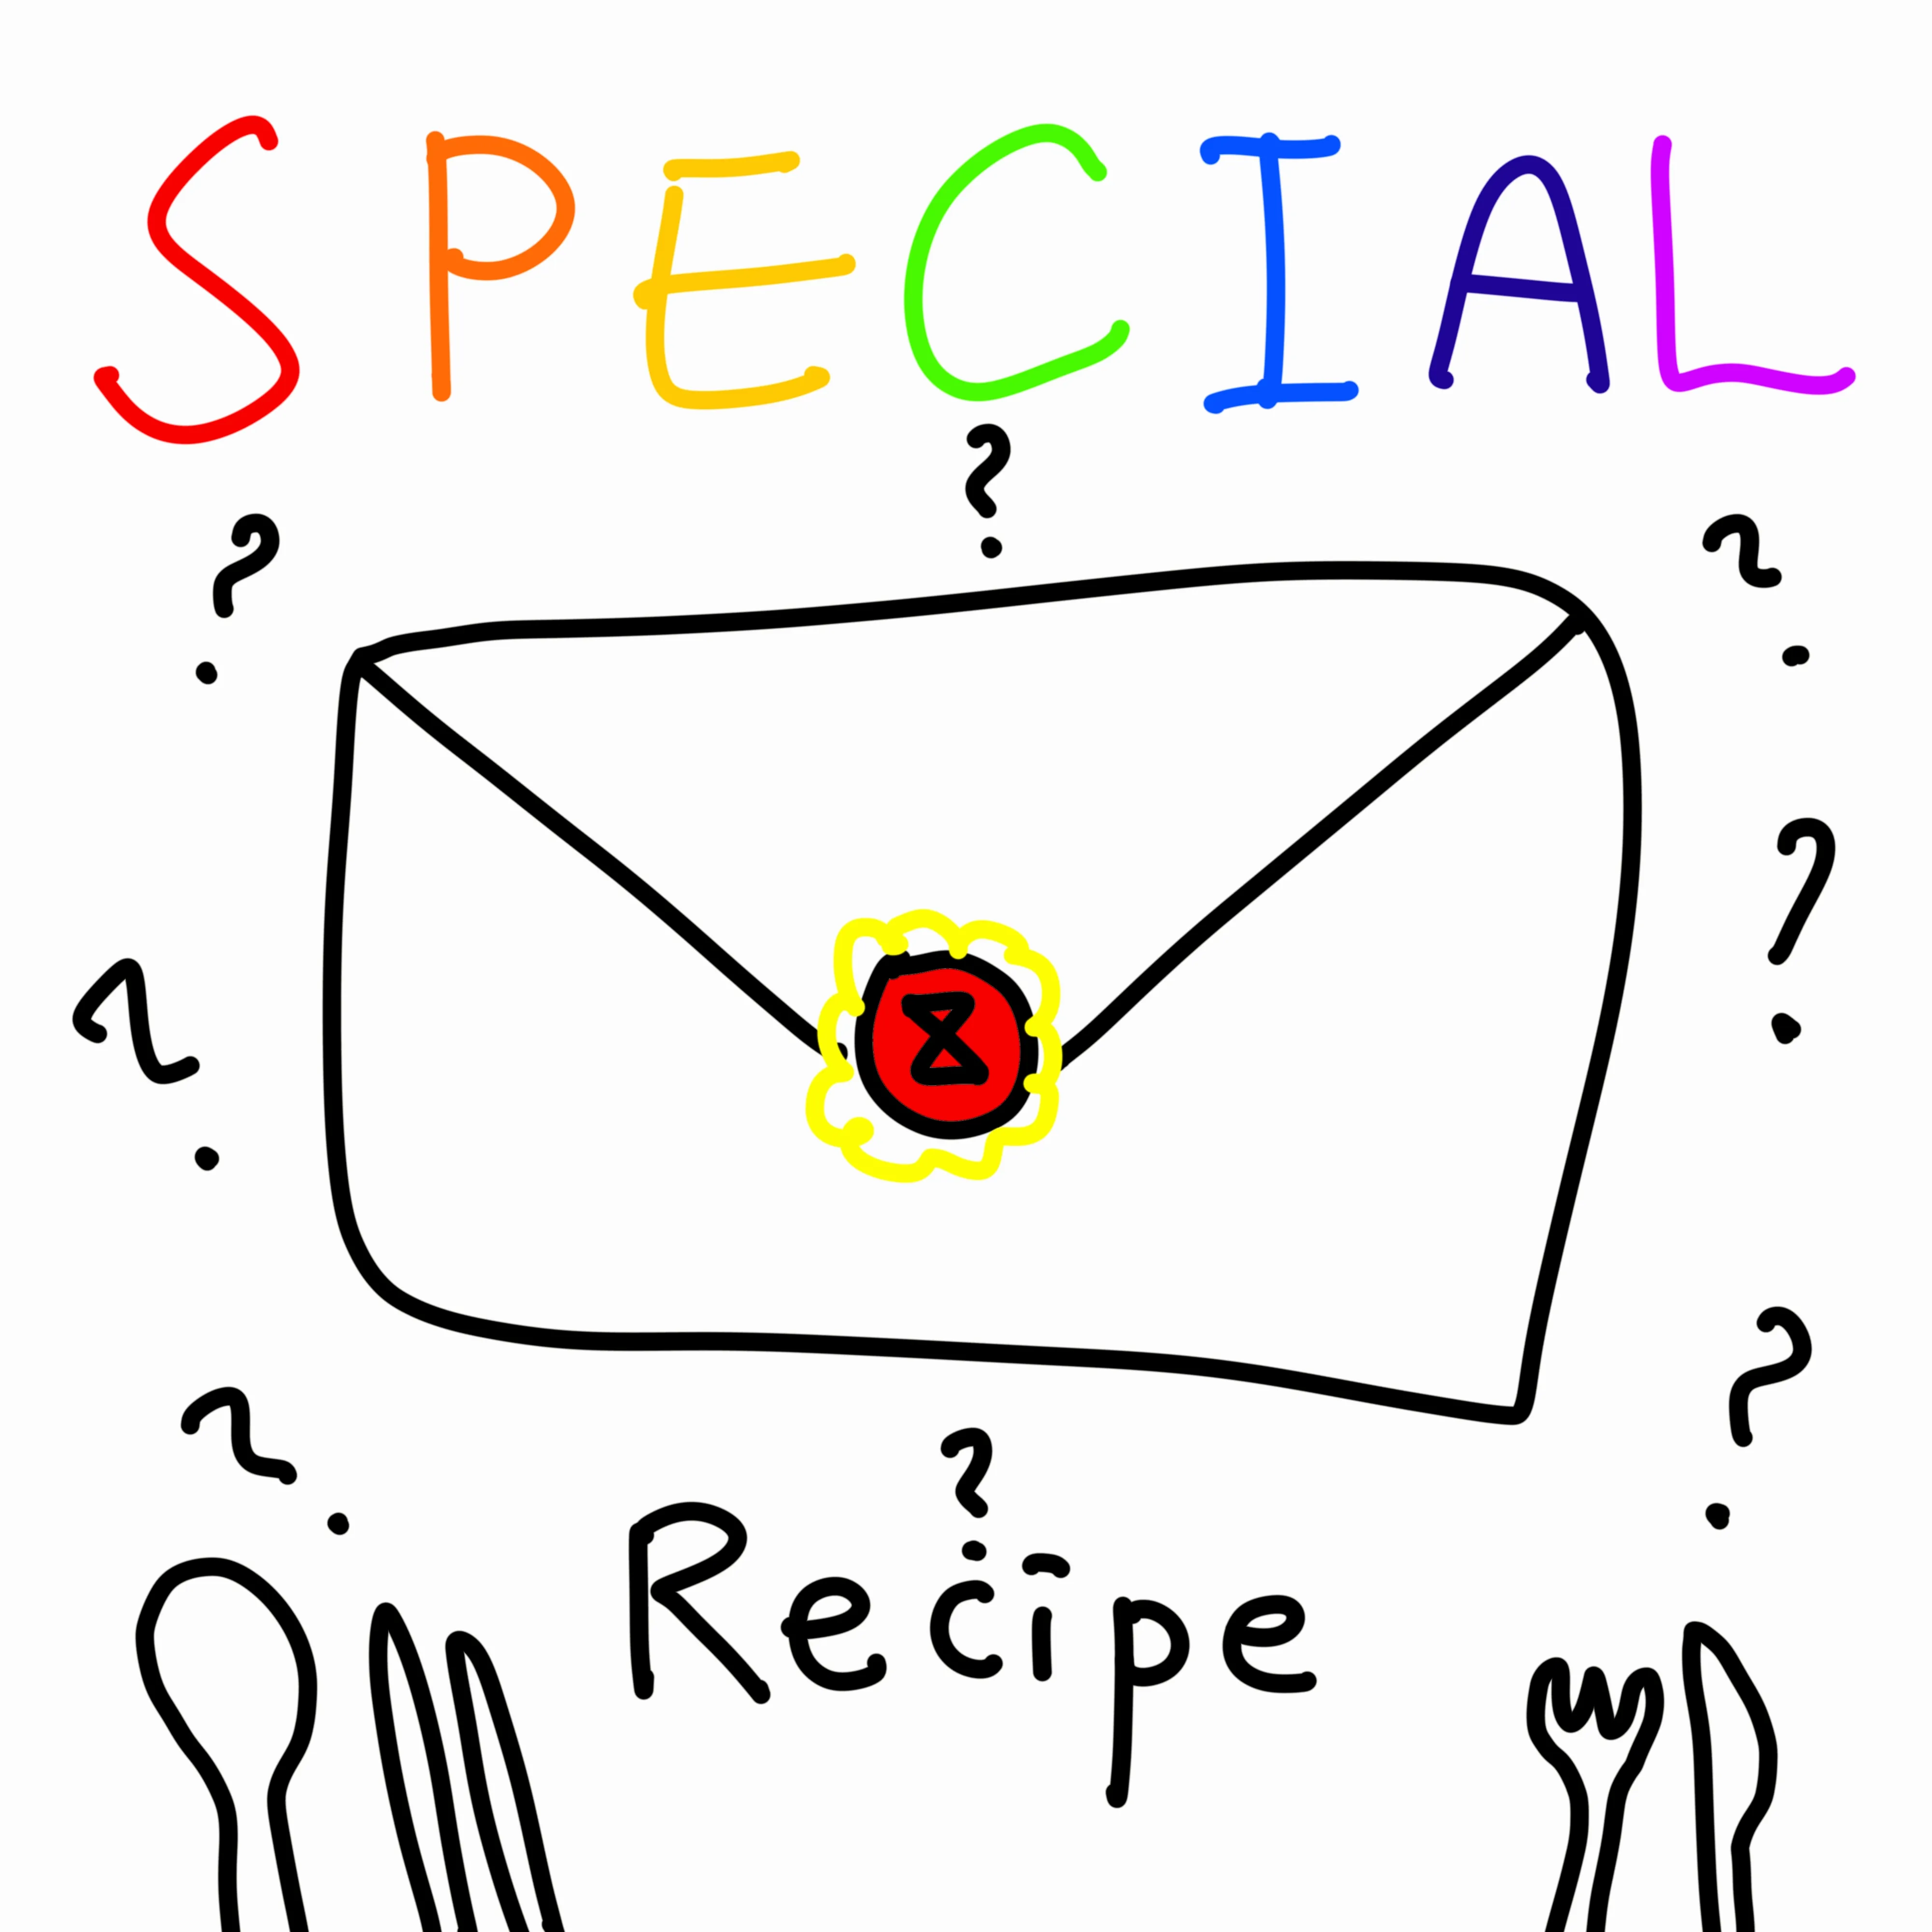 001 - Special Recipe Ticket